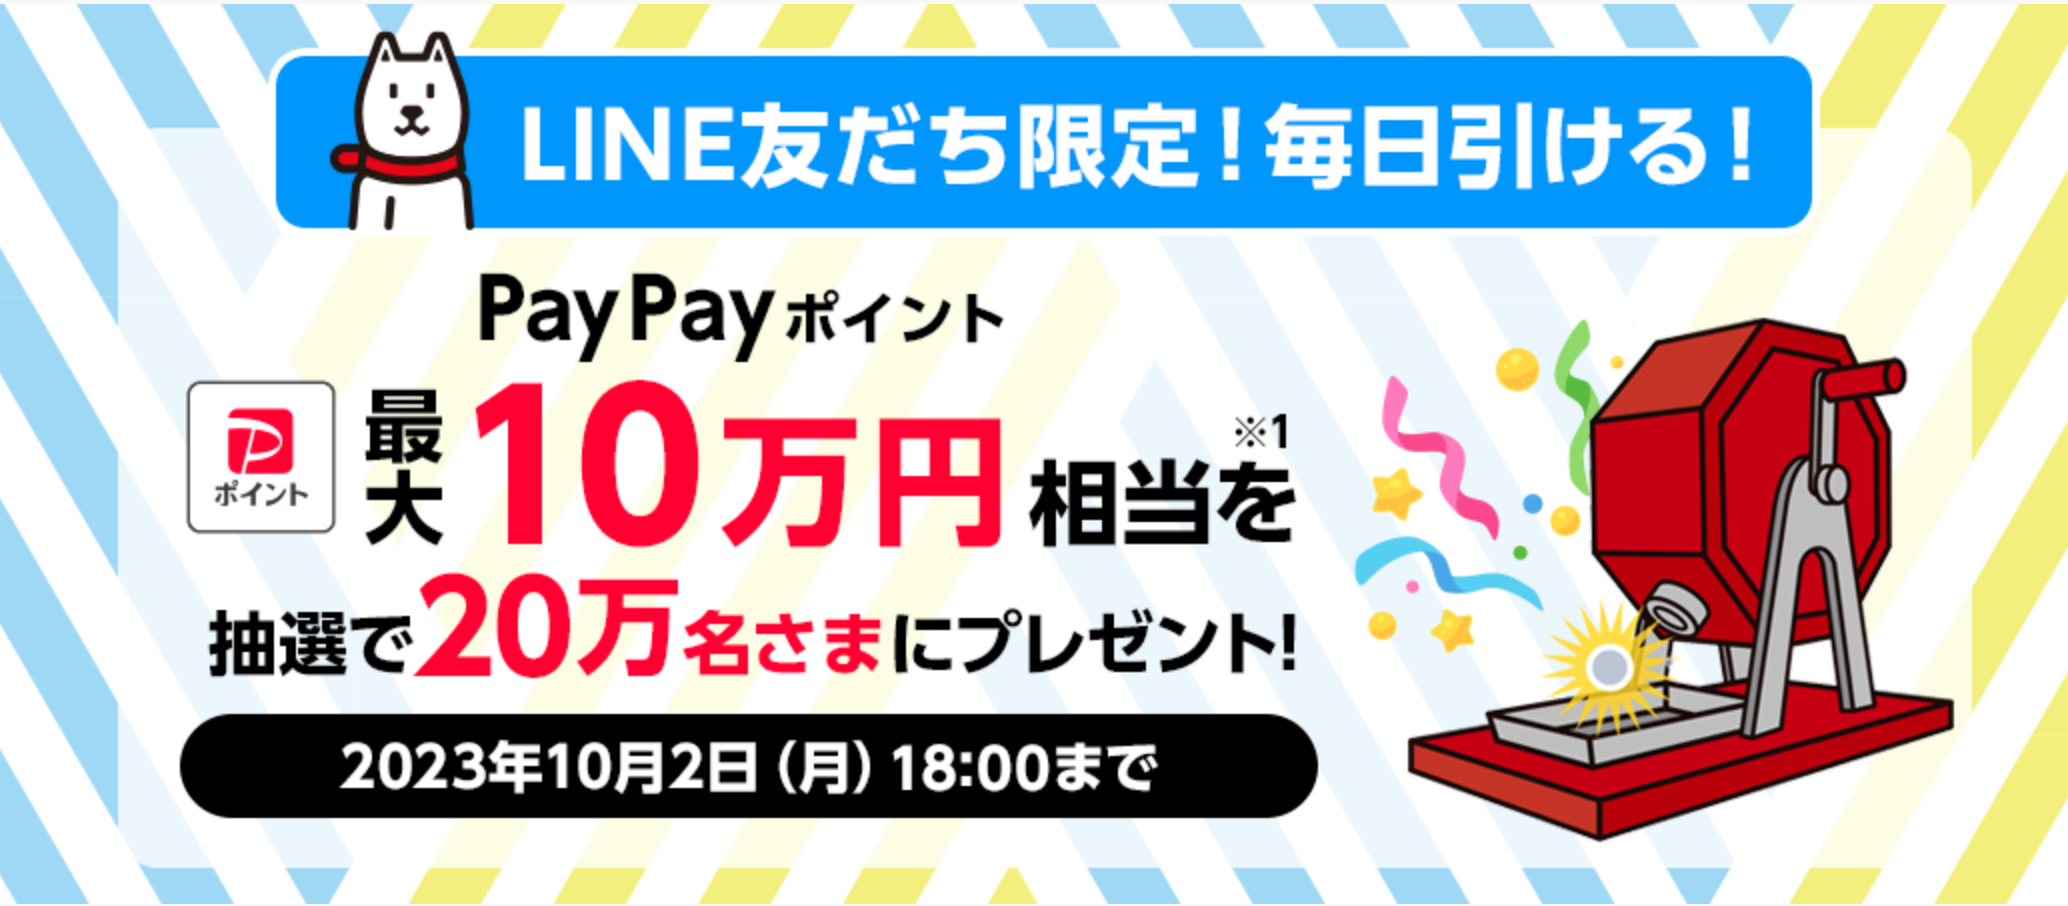 【ドリームチャンス】
「PayPayポイント 最大10万円相当※1」が
その場で当たる！